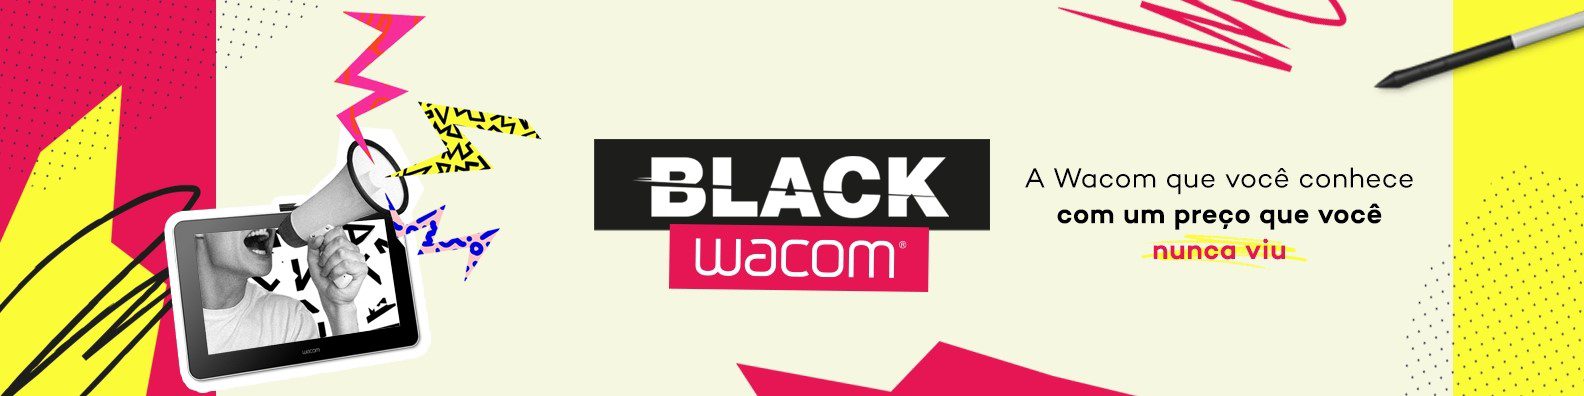 Wacom prepara black week com lives e descontos em seus produtos